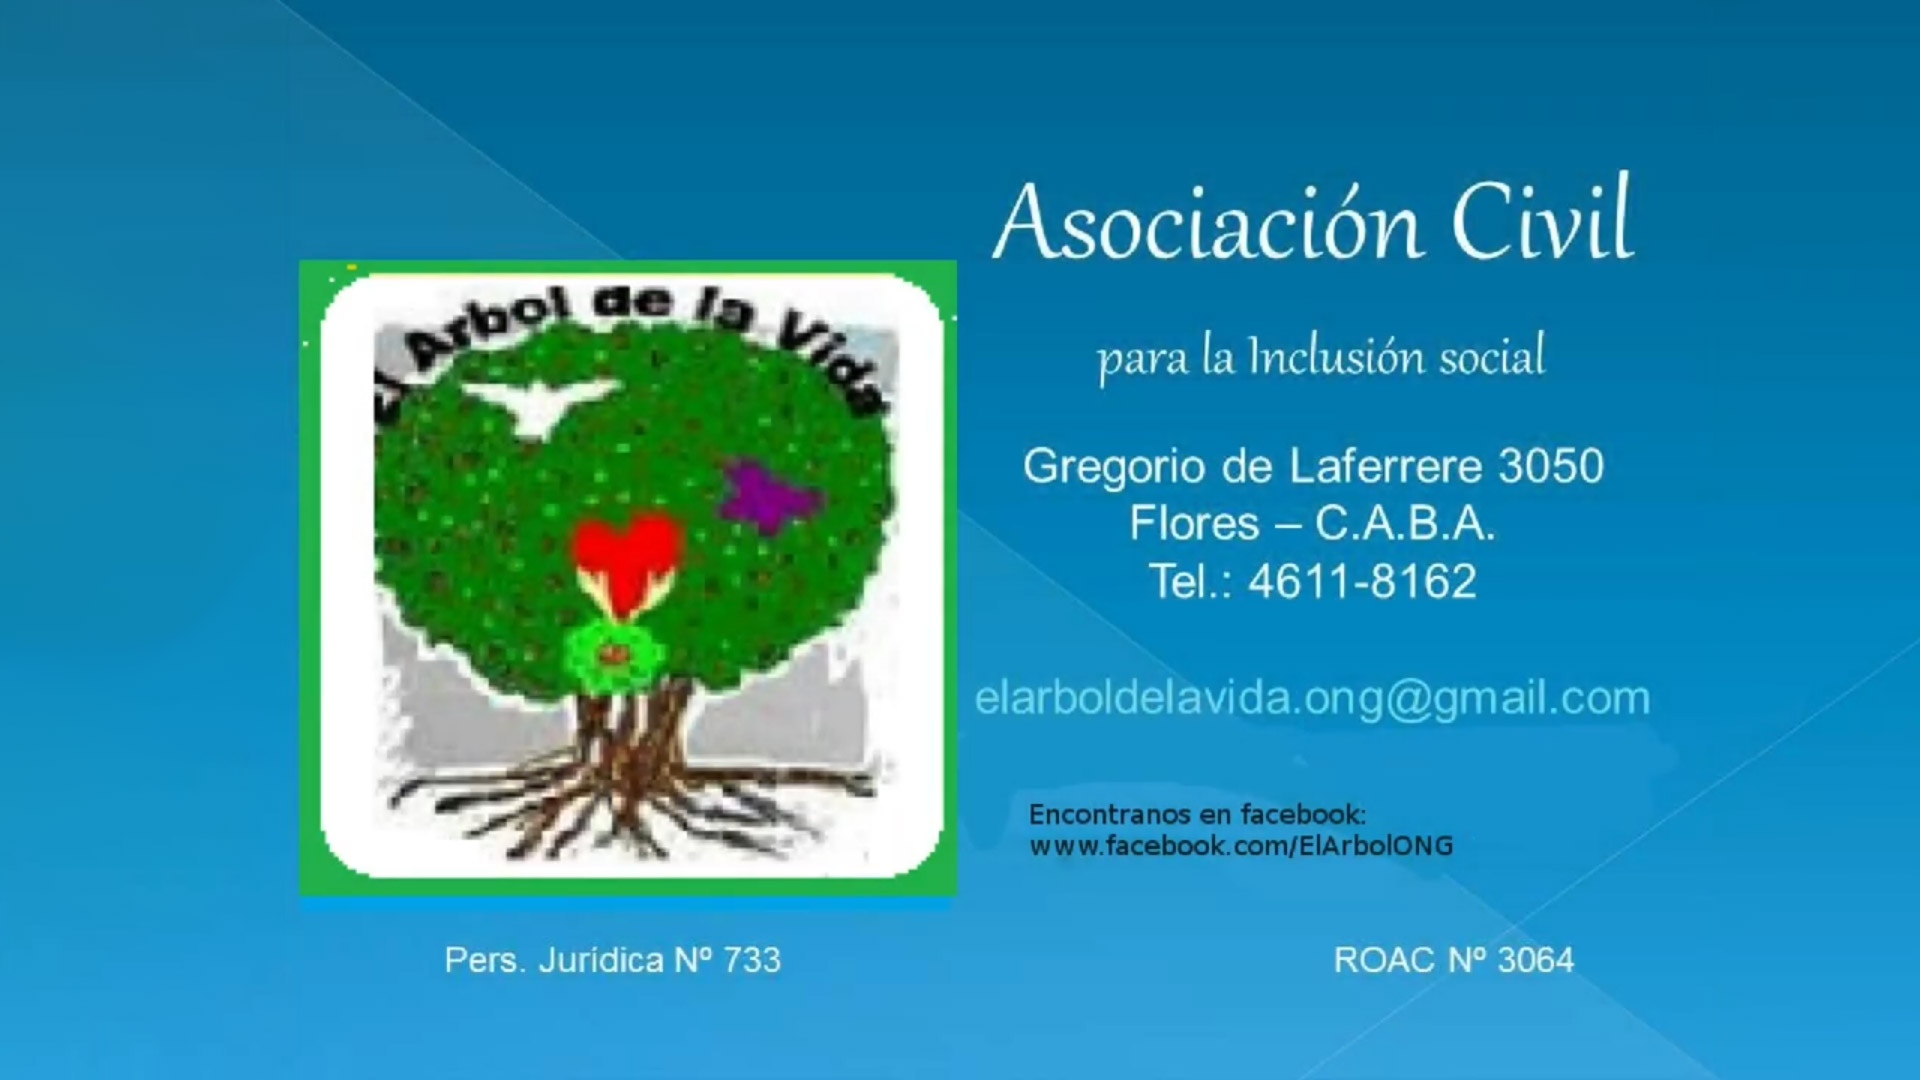 El Árbol de la Vida, Asociación Civil para la Inclusión Social